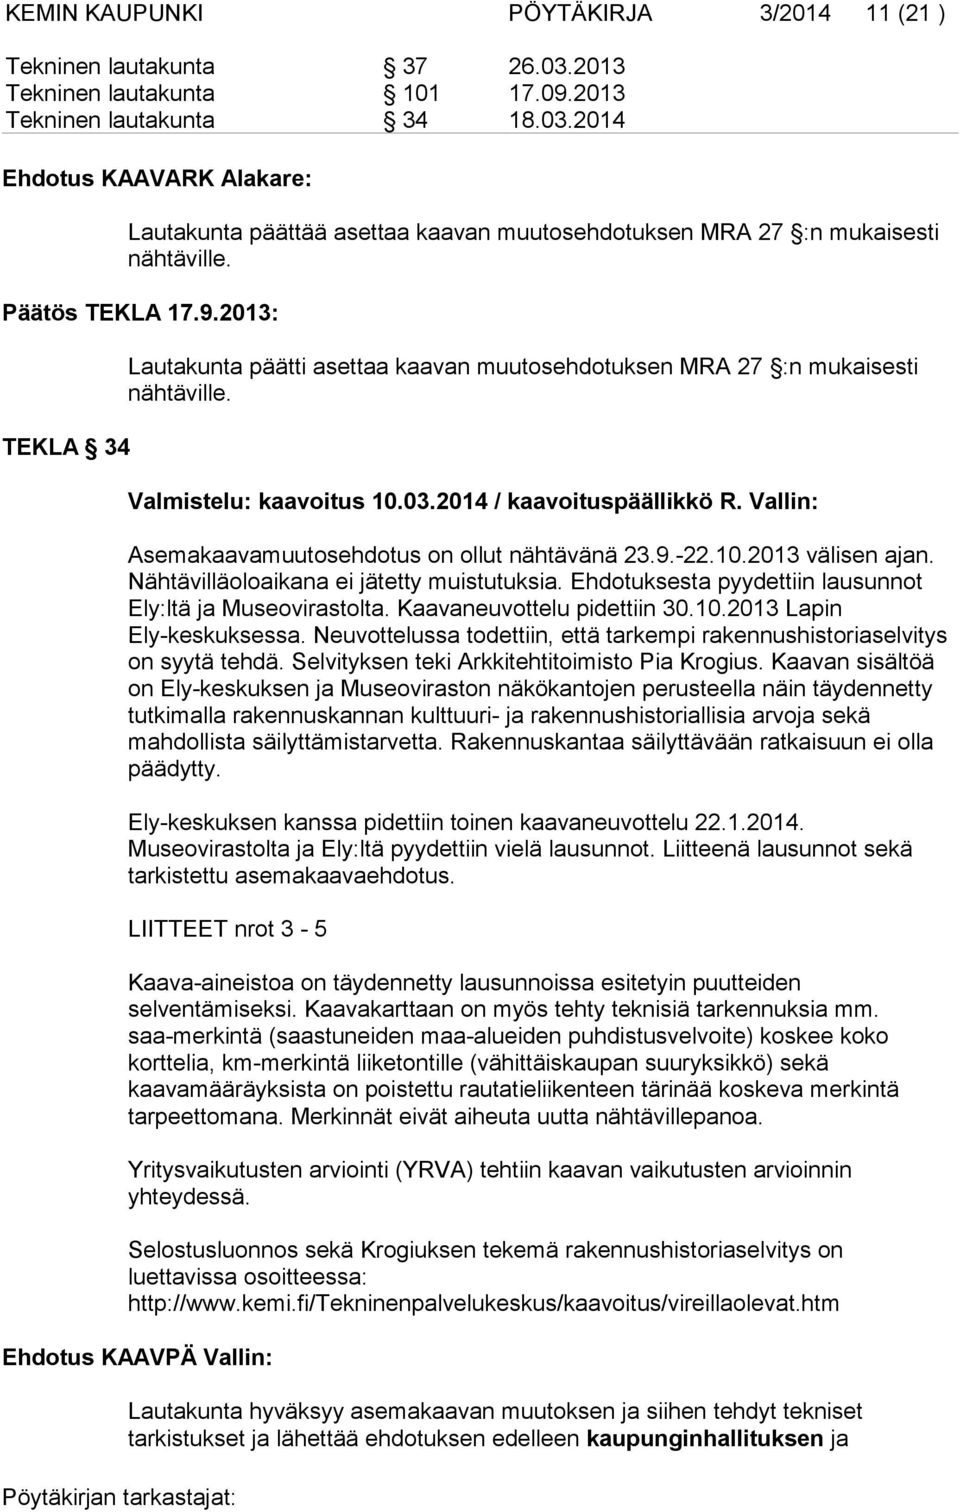 Vallin: Asemakaavamuutosehdotus on ollut nähtävänä 23.9.-22.10.2013 välisen ajan. Nähtävilläoloaikana ei jätetty muistutuksia. Ehdotuksesta pyydettiin lausunnot Ely:ltä ja Museovirastolta.